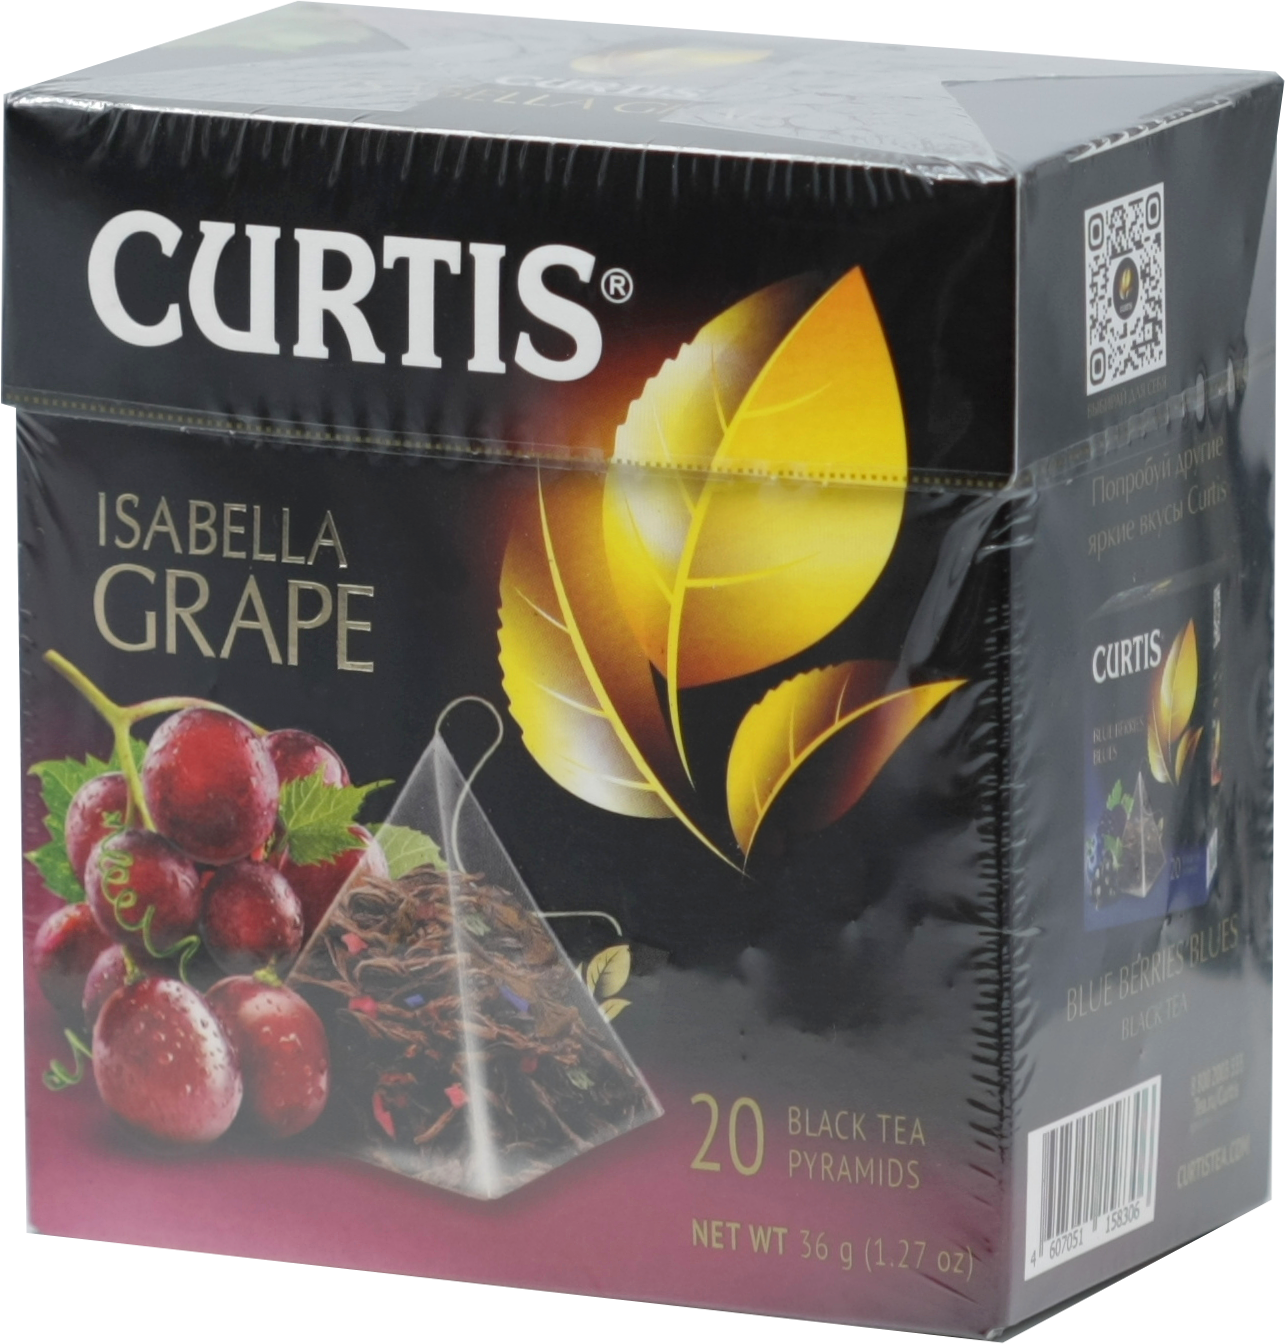 CURTIS. Isabella Grape (пирамидки) 36 гр. карт.пачка, 20 пирамидки